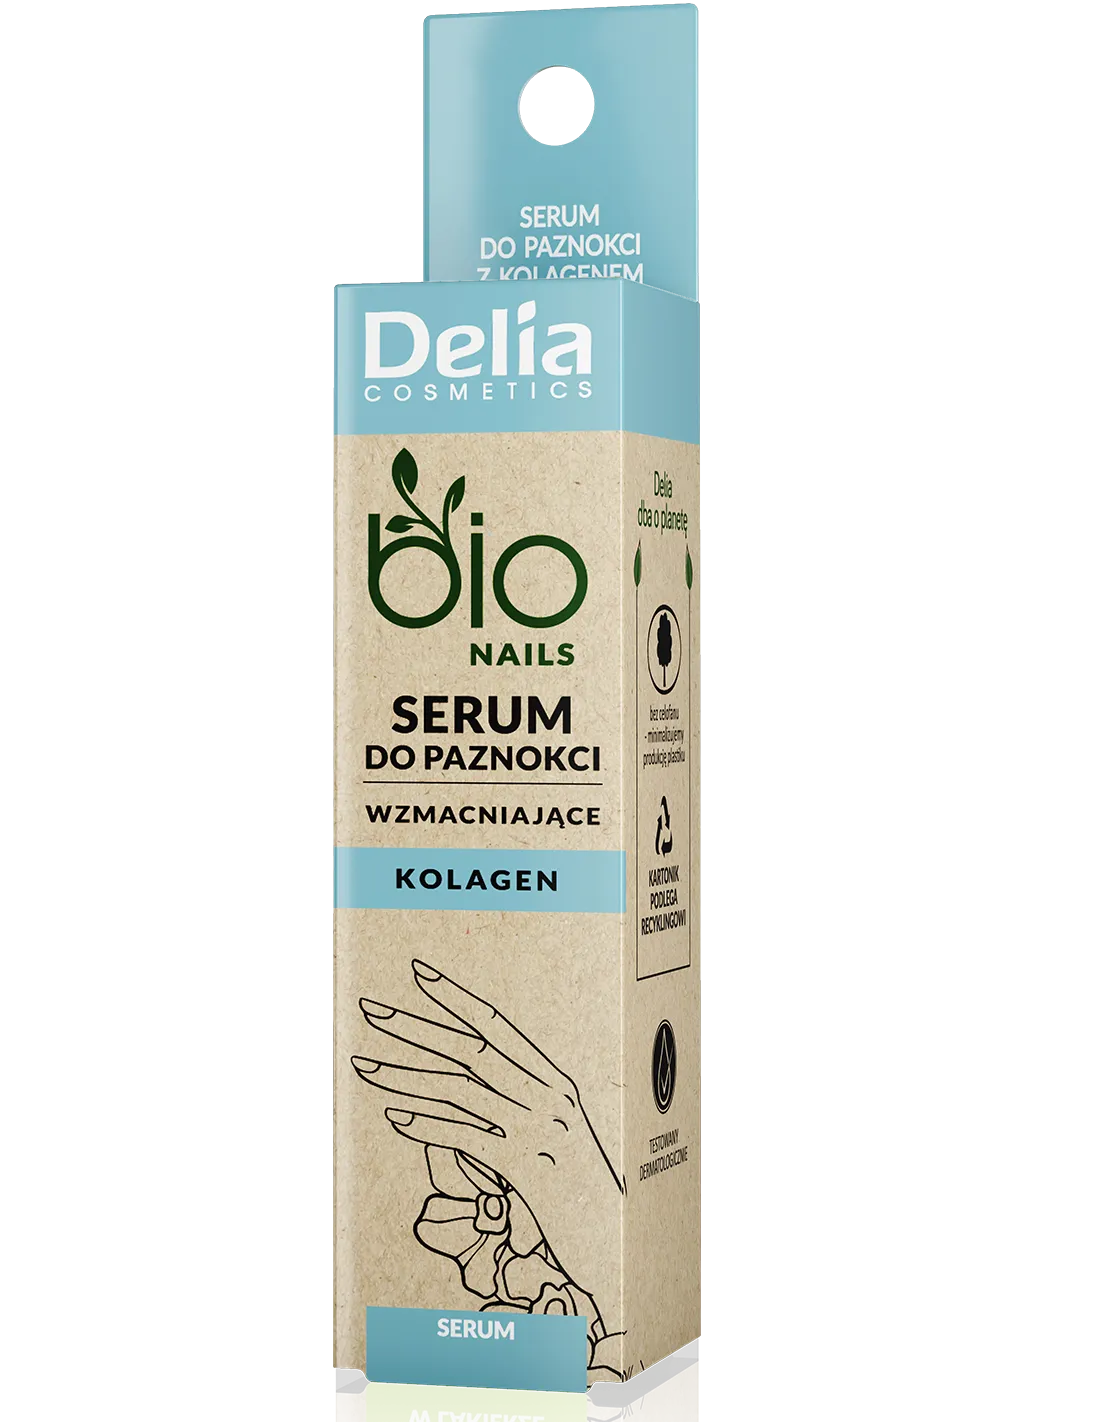 Delia Bio Nails wzmacniające serum do paznokci z kolagenem, 11 ml